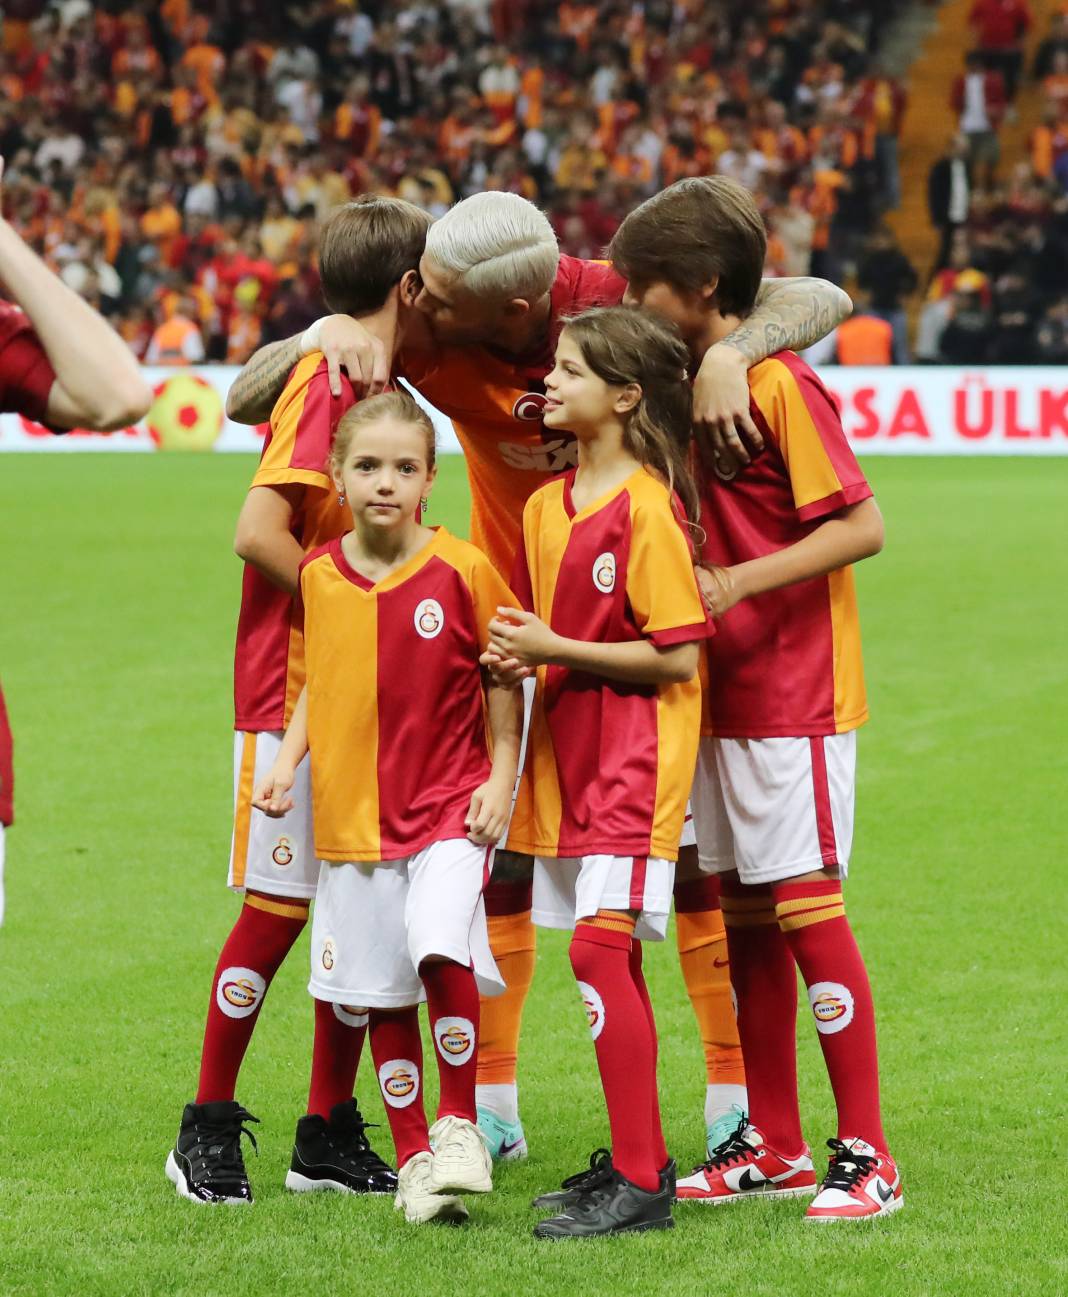 Nefes kesen Galatasaray Kasımpaşa maçından müthiş fotoğraflar 11